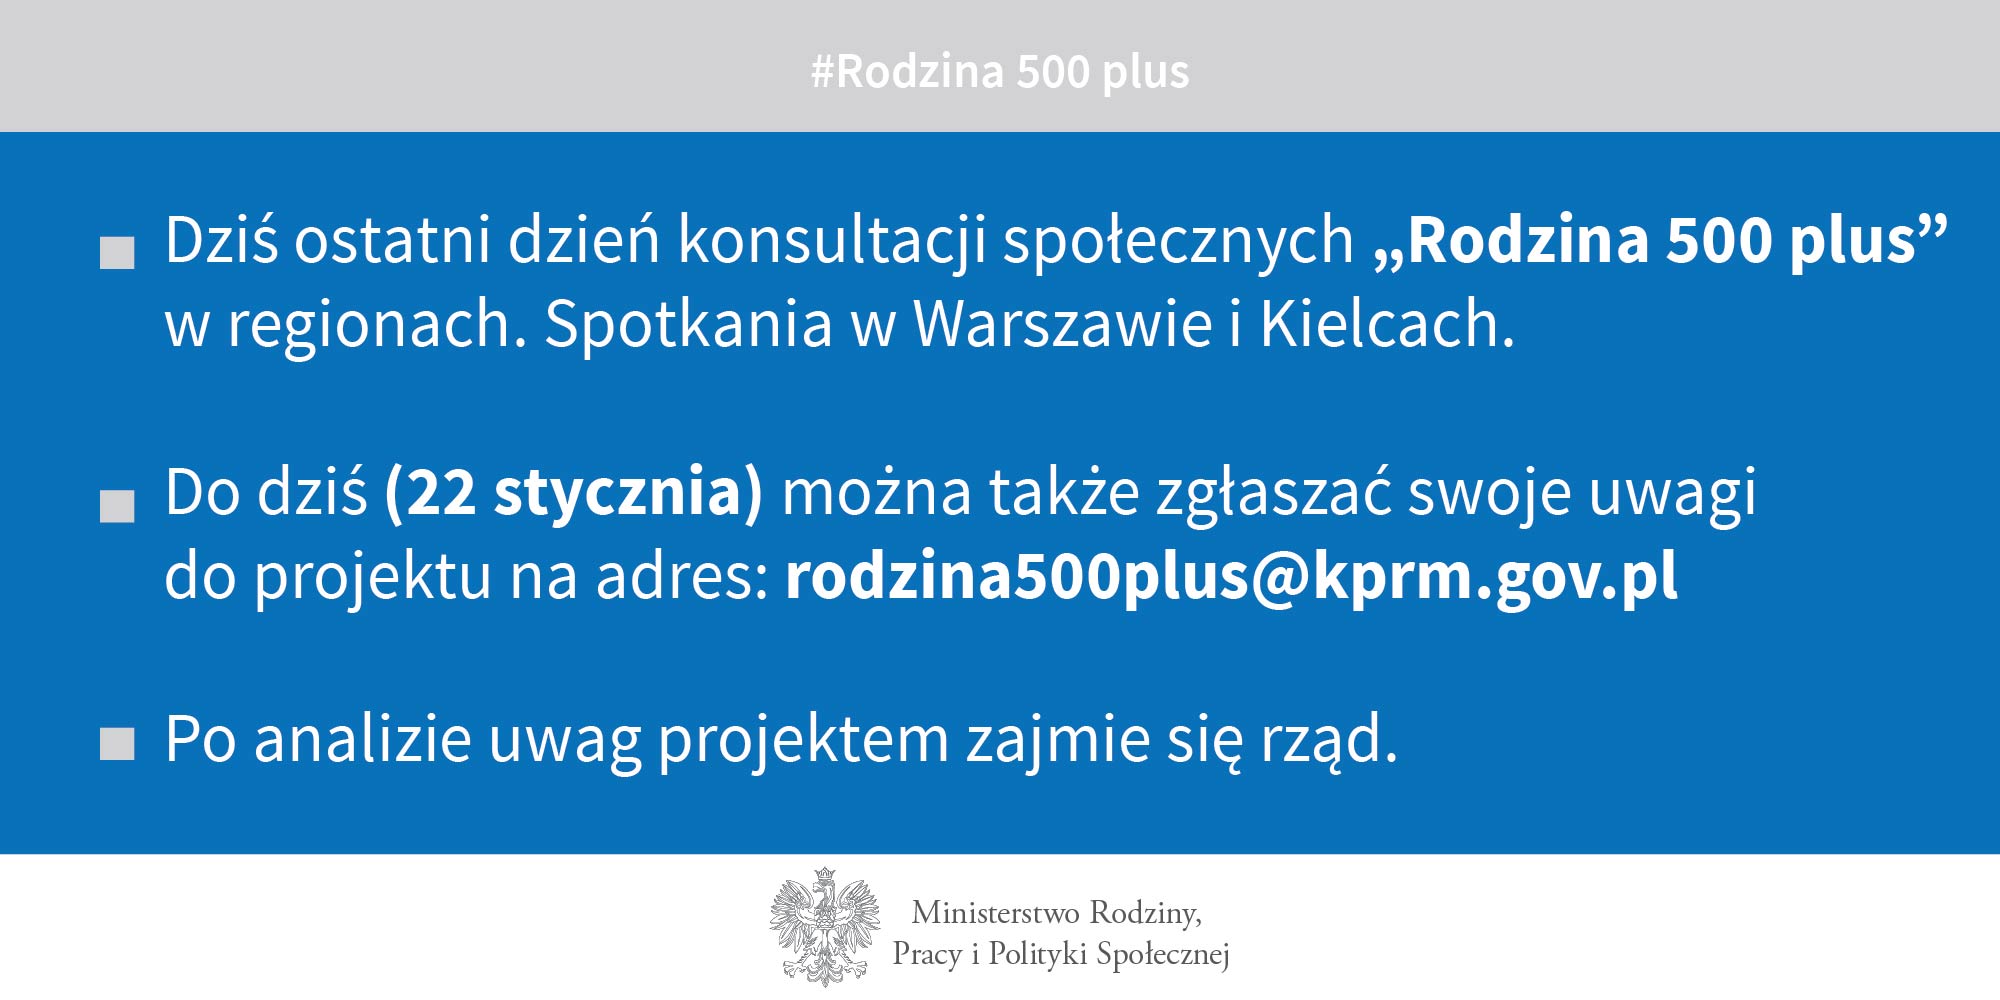 1.	Dziś ostatni dzień konsultacji społecznych „Rodzina 500 plus” w regionach. Spotkania w Warszawie i Kielcach. 2.	Do dziś (22 stycznia) można także zgłaszać swoje uwagi do projektu na adres rodzina500plus@kprm.gov.pl   3.	Po analizie uwag projektem zajmie się rząd.